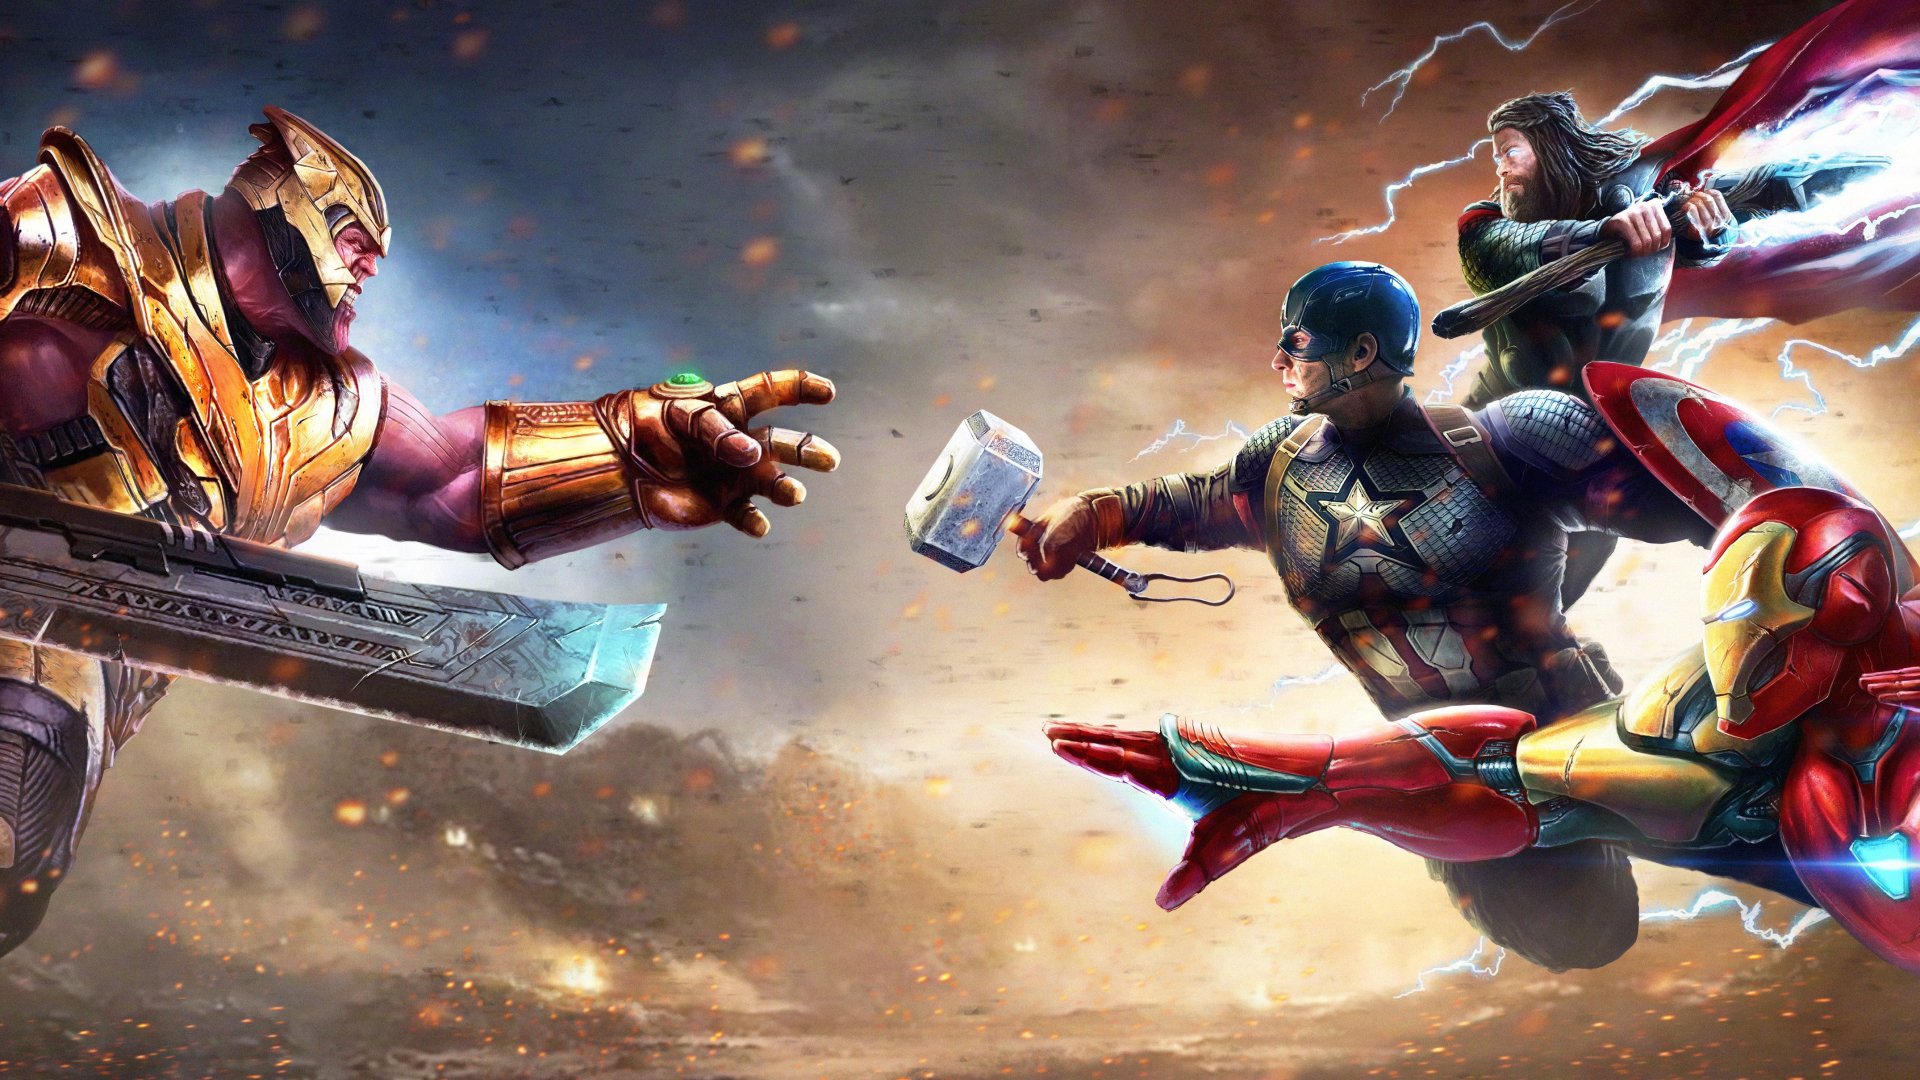 Movie Avengers Endgame 4k Ultra Hd Wallpaper By Jackson Caspersz